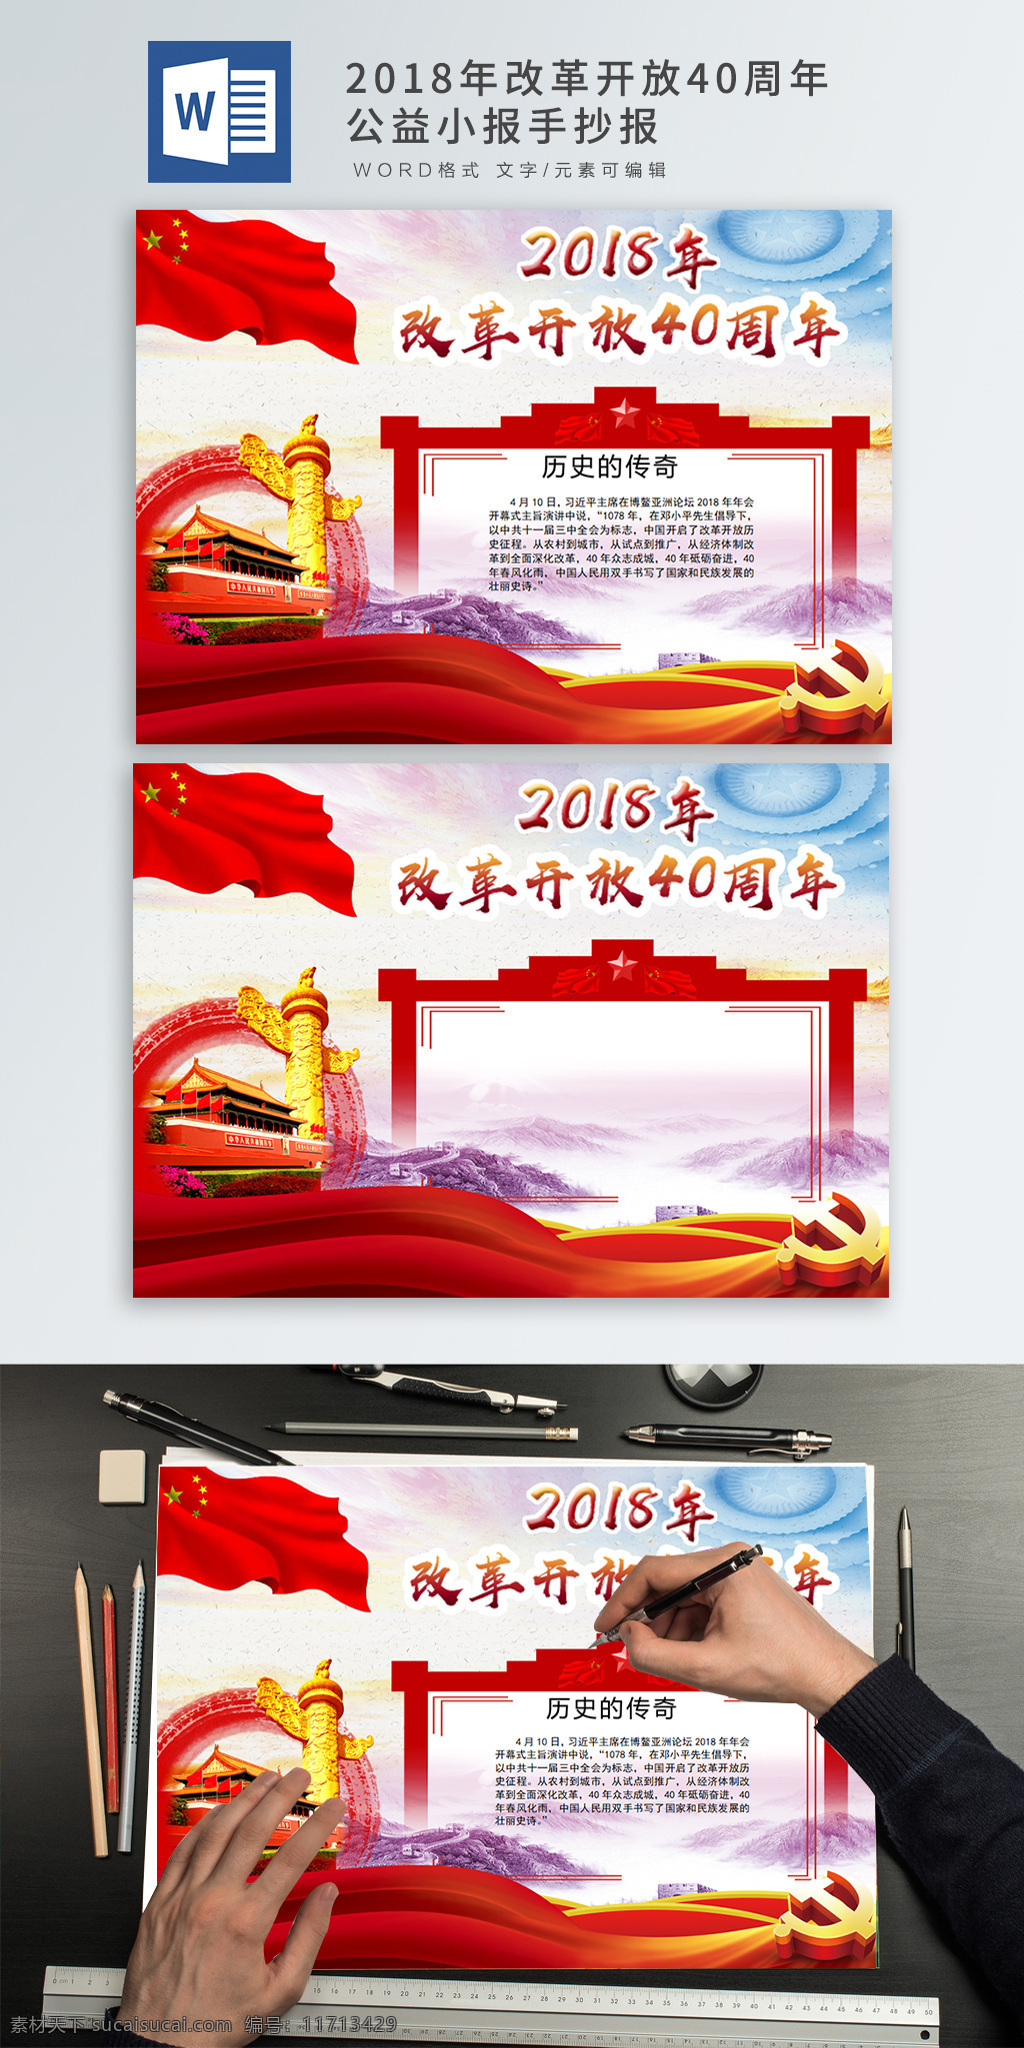 2018 年 改革开放 周年 华表 天安门 中国红 党 改革 开放 中国 五星红旗 手抄报